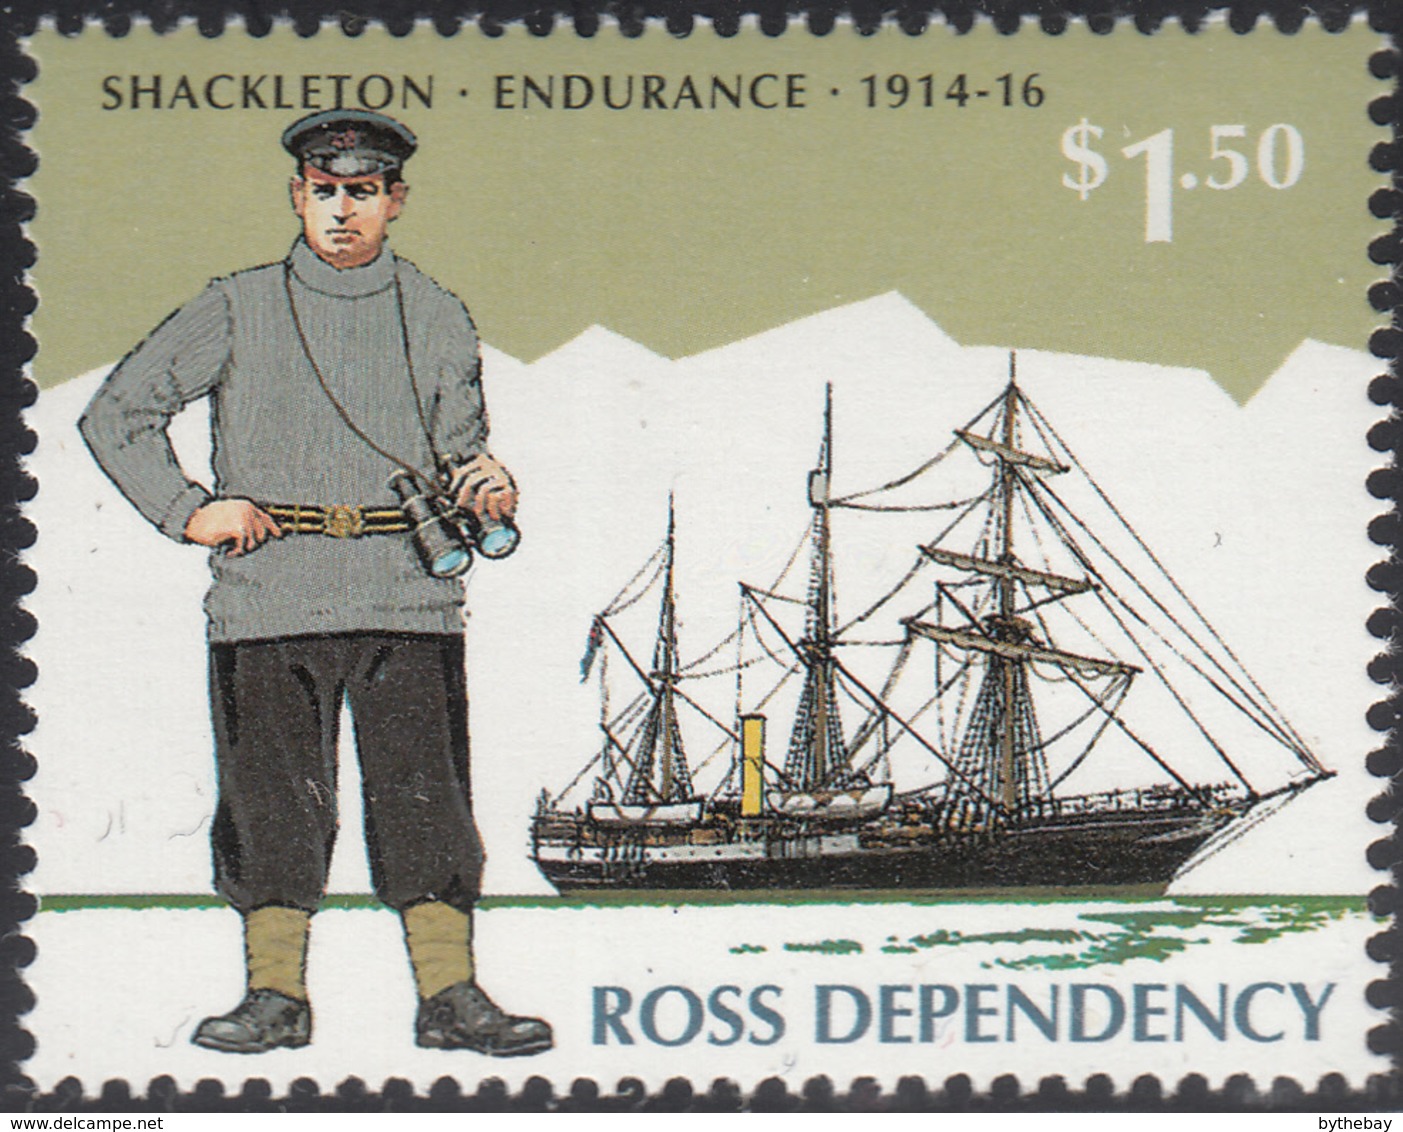 Ross Dependency 1995 MNH Sc L35 $1.50 Shackleton, Endurance 1914-16 - Unused Stamps